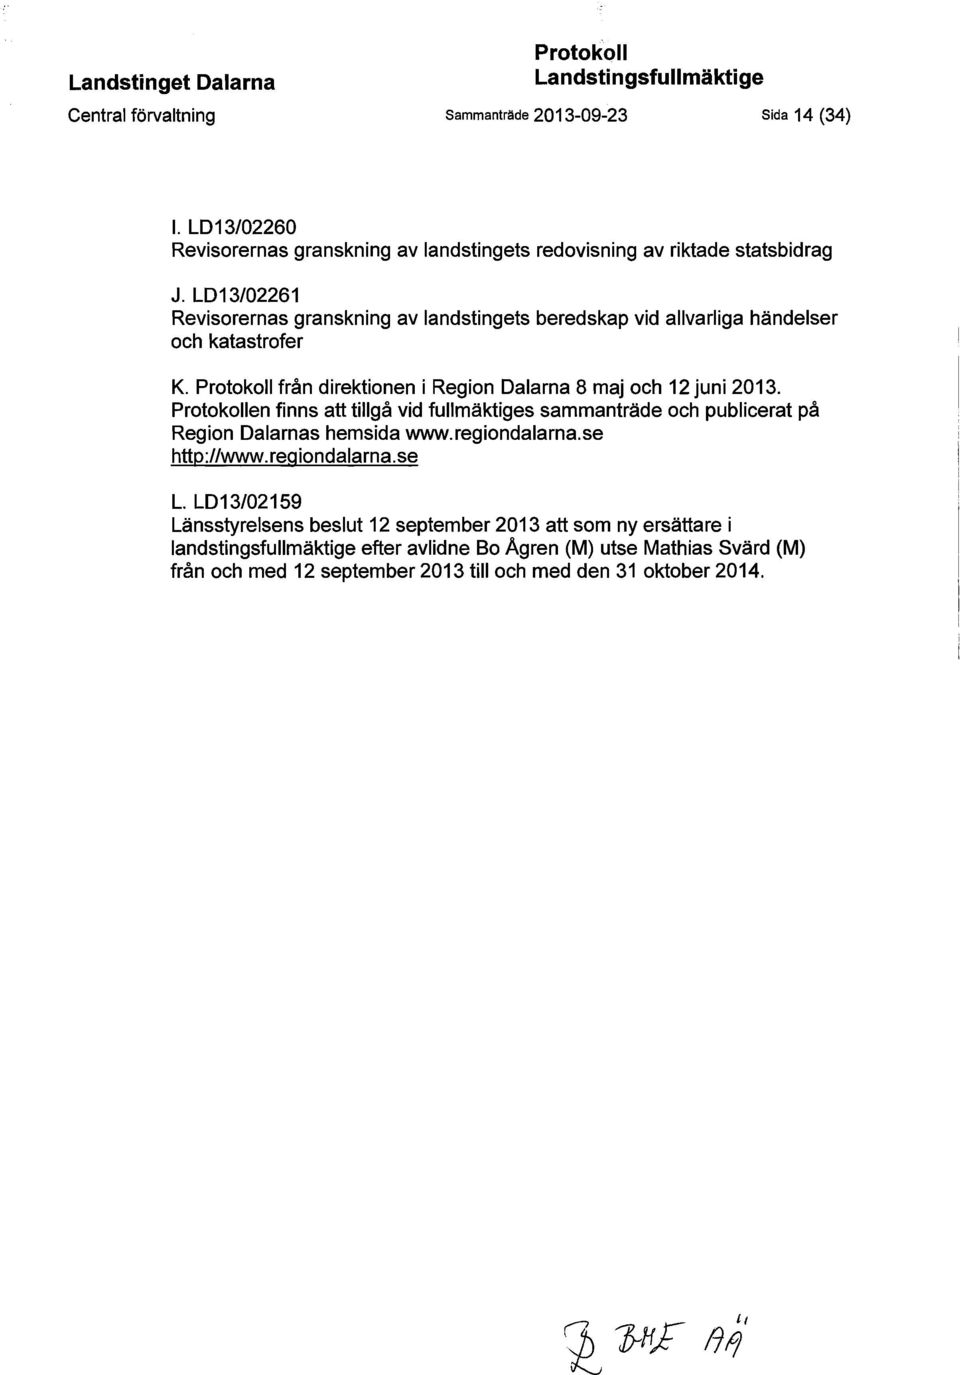 LD13/02261 Revisorernas granskning av landstingets beredskap vid allvarliga händelser och katastrofer K. Protokoll från direktionen i Region Dalarna 8 maj och 12 juni 2013.